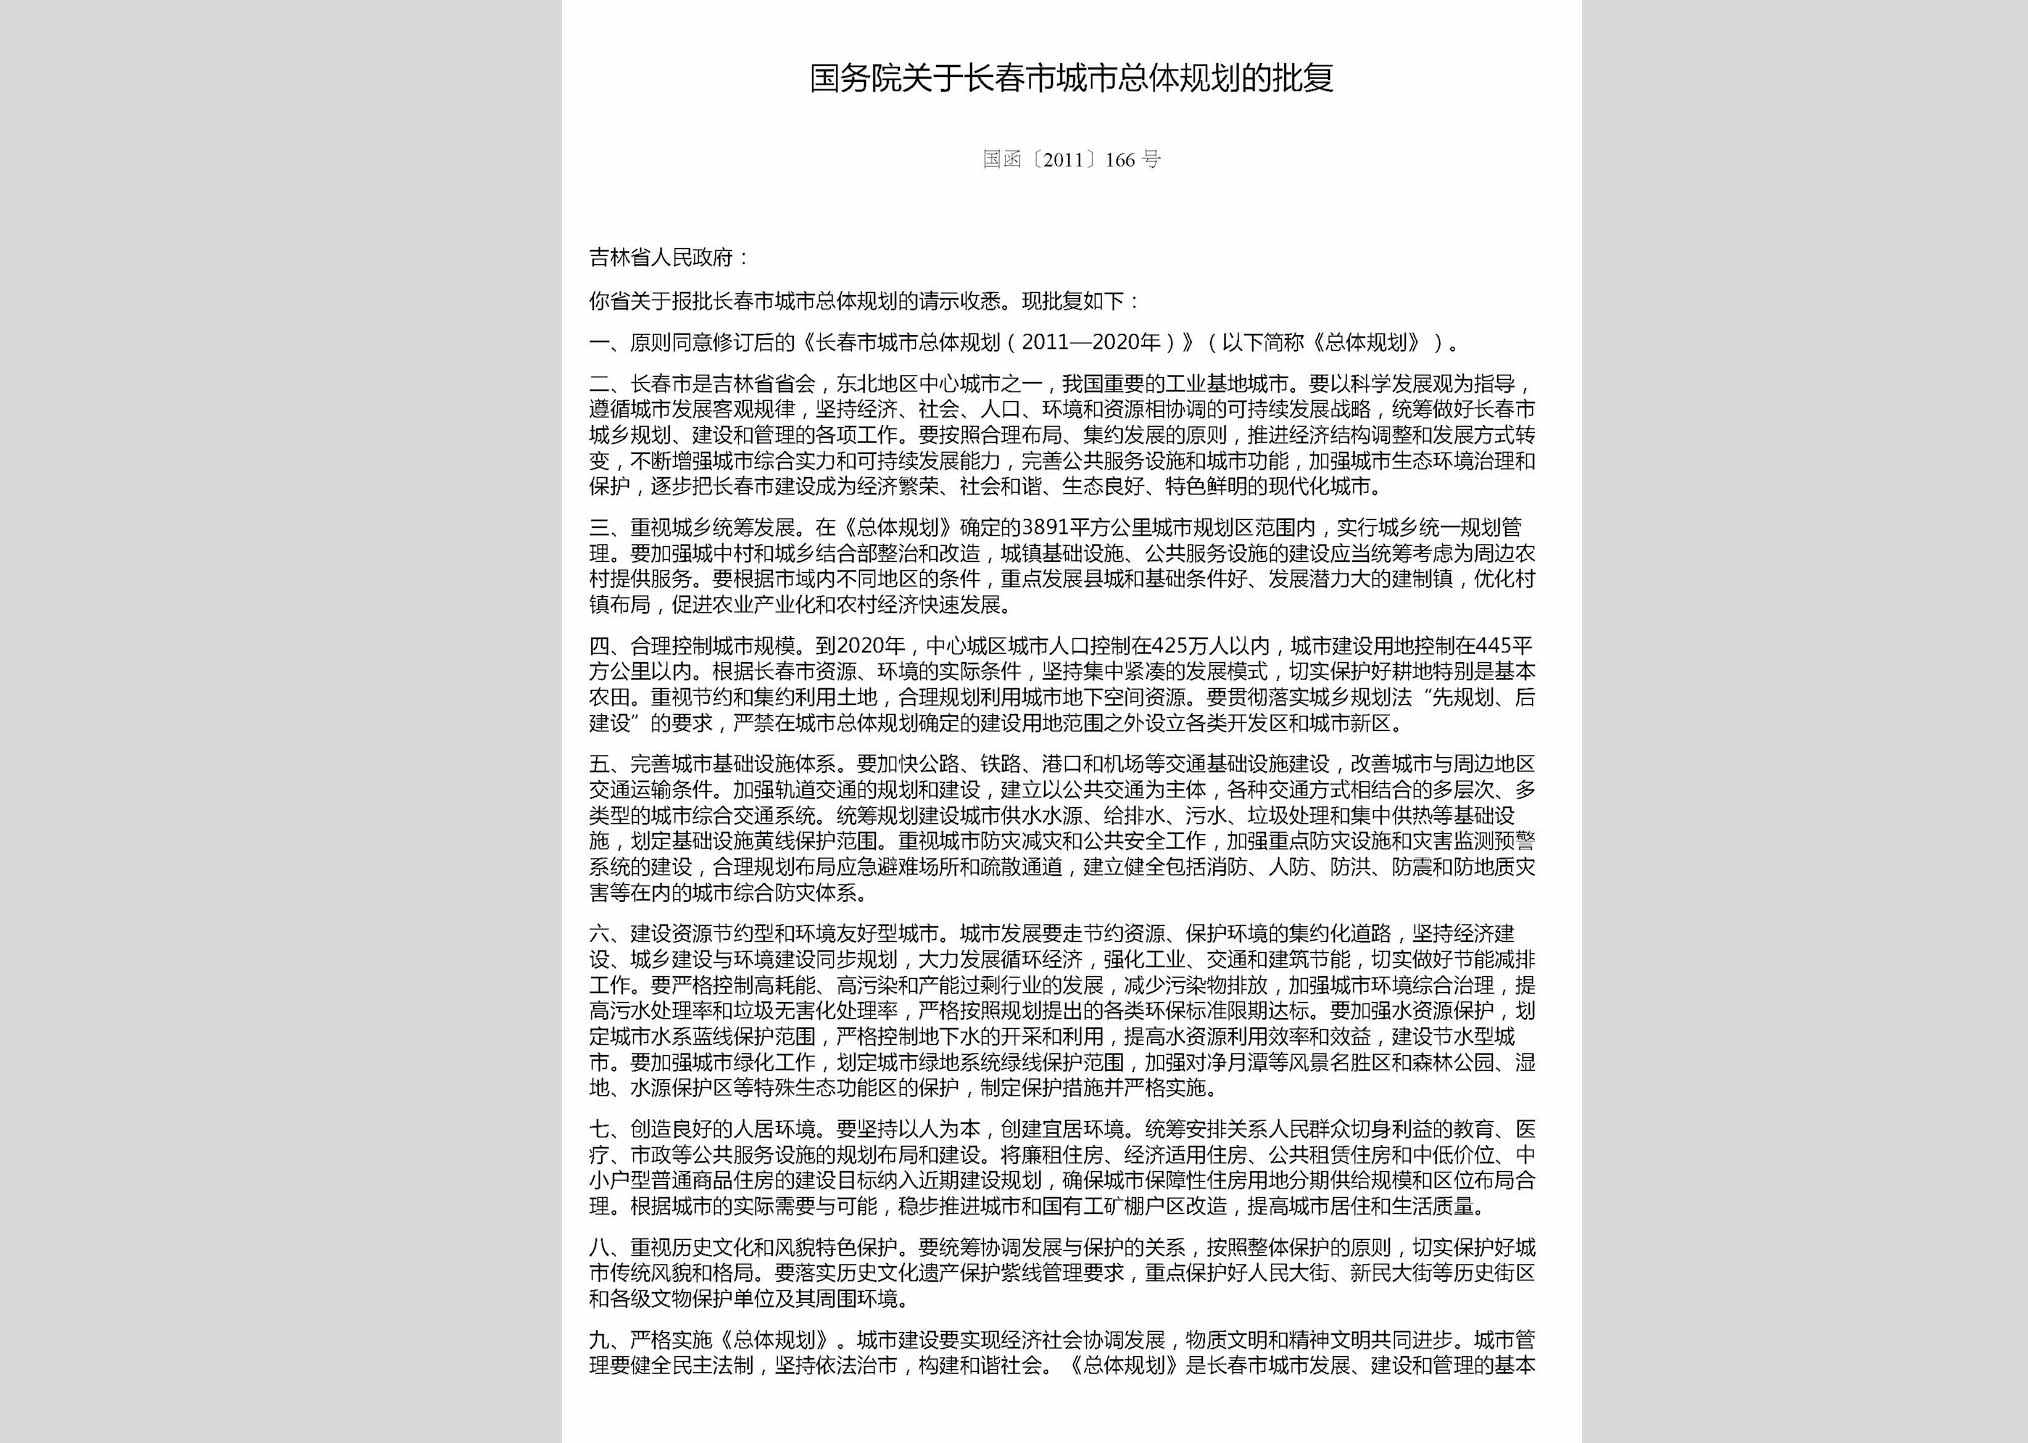 国函[2011]166号：国务院关于长春市城市总体规划的批复